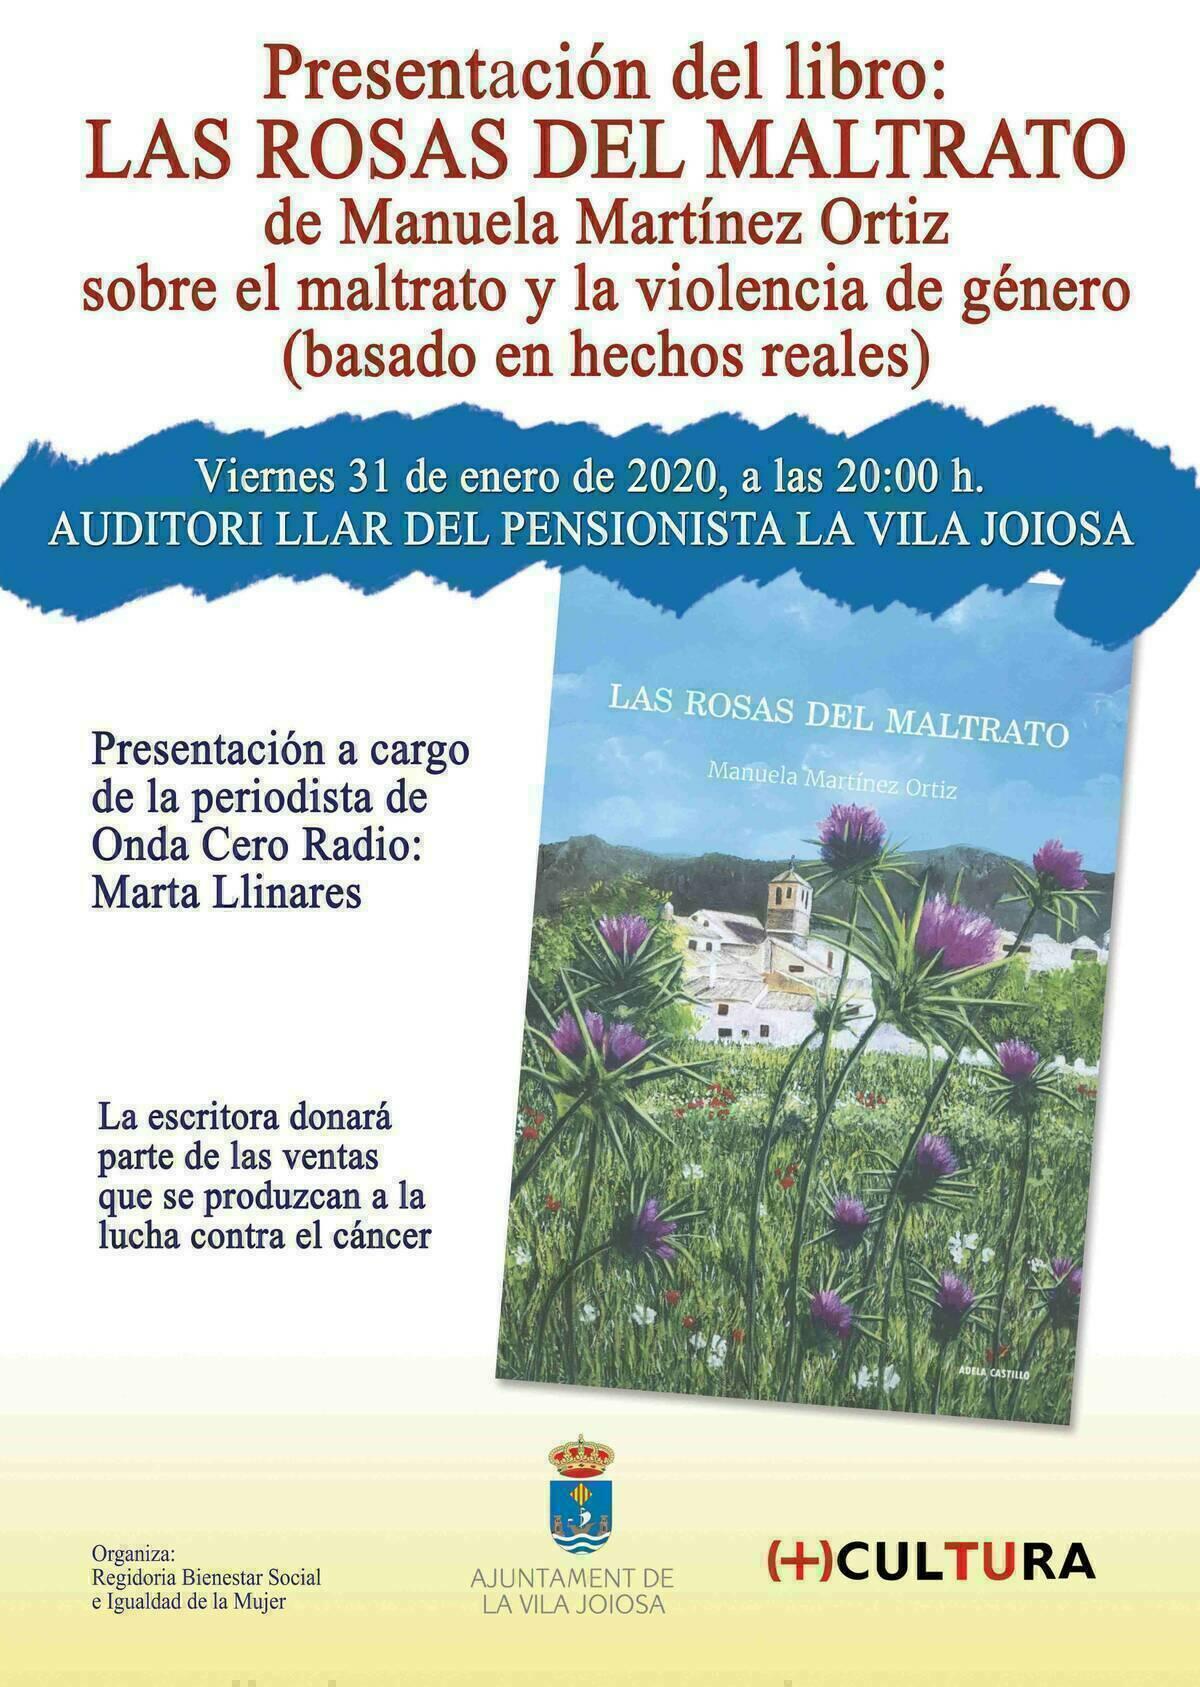 La Vila ·  Presentan el libro ‘Las rosas del maltrato’ de Manuela Martínez